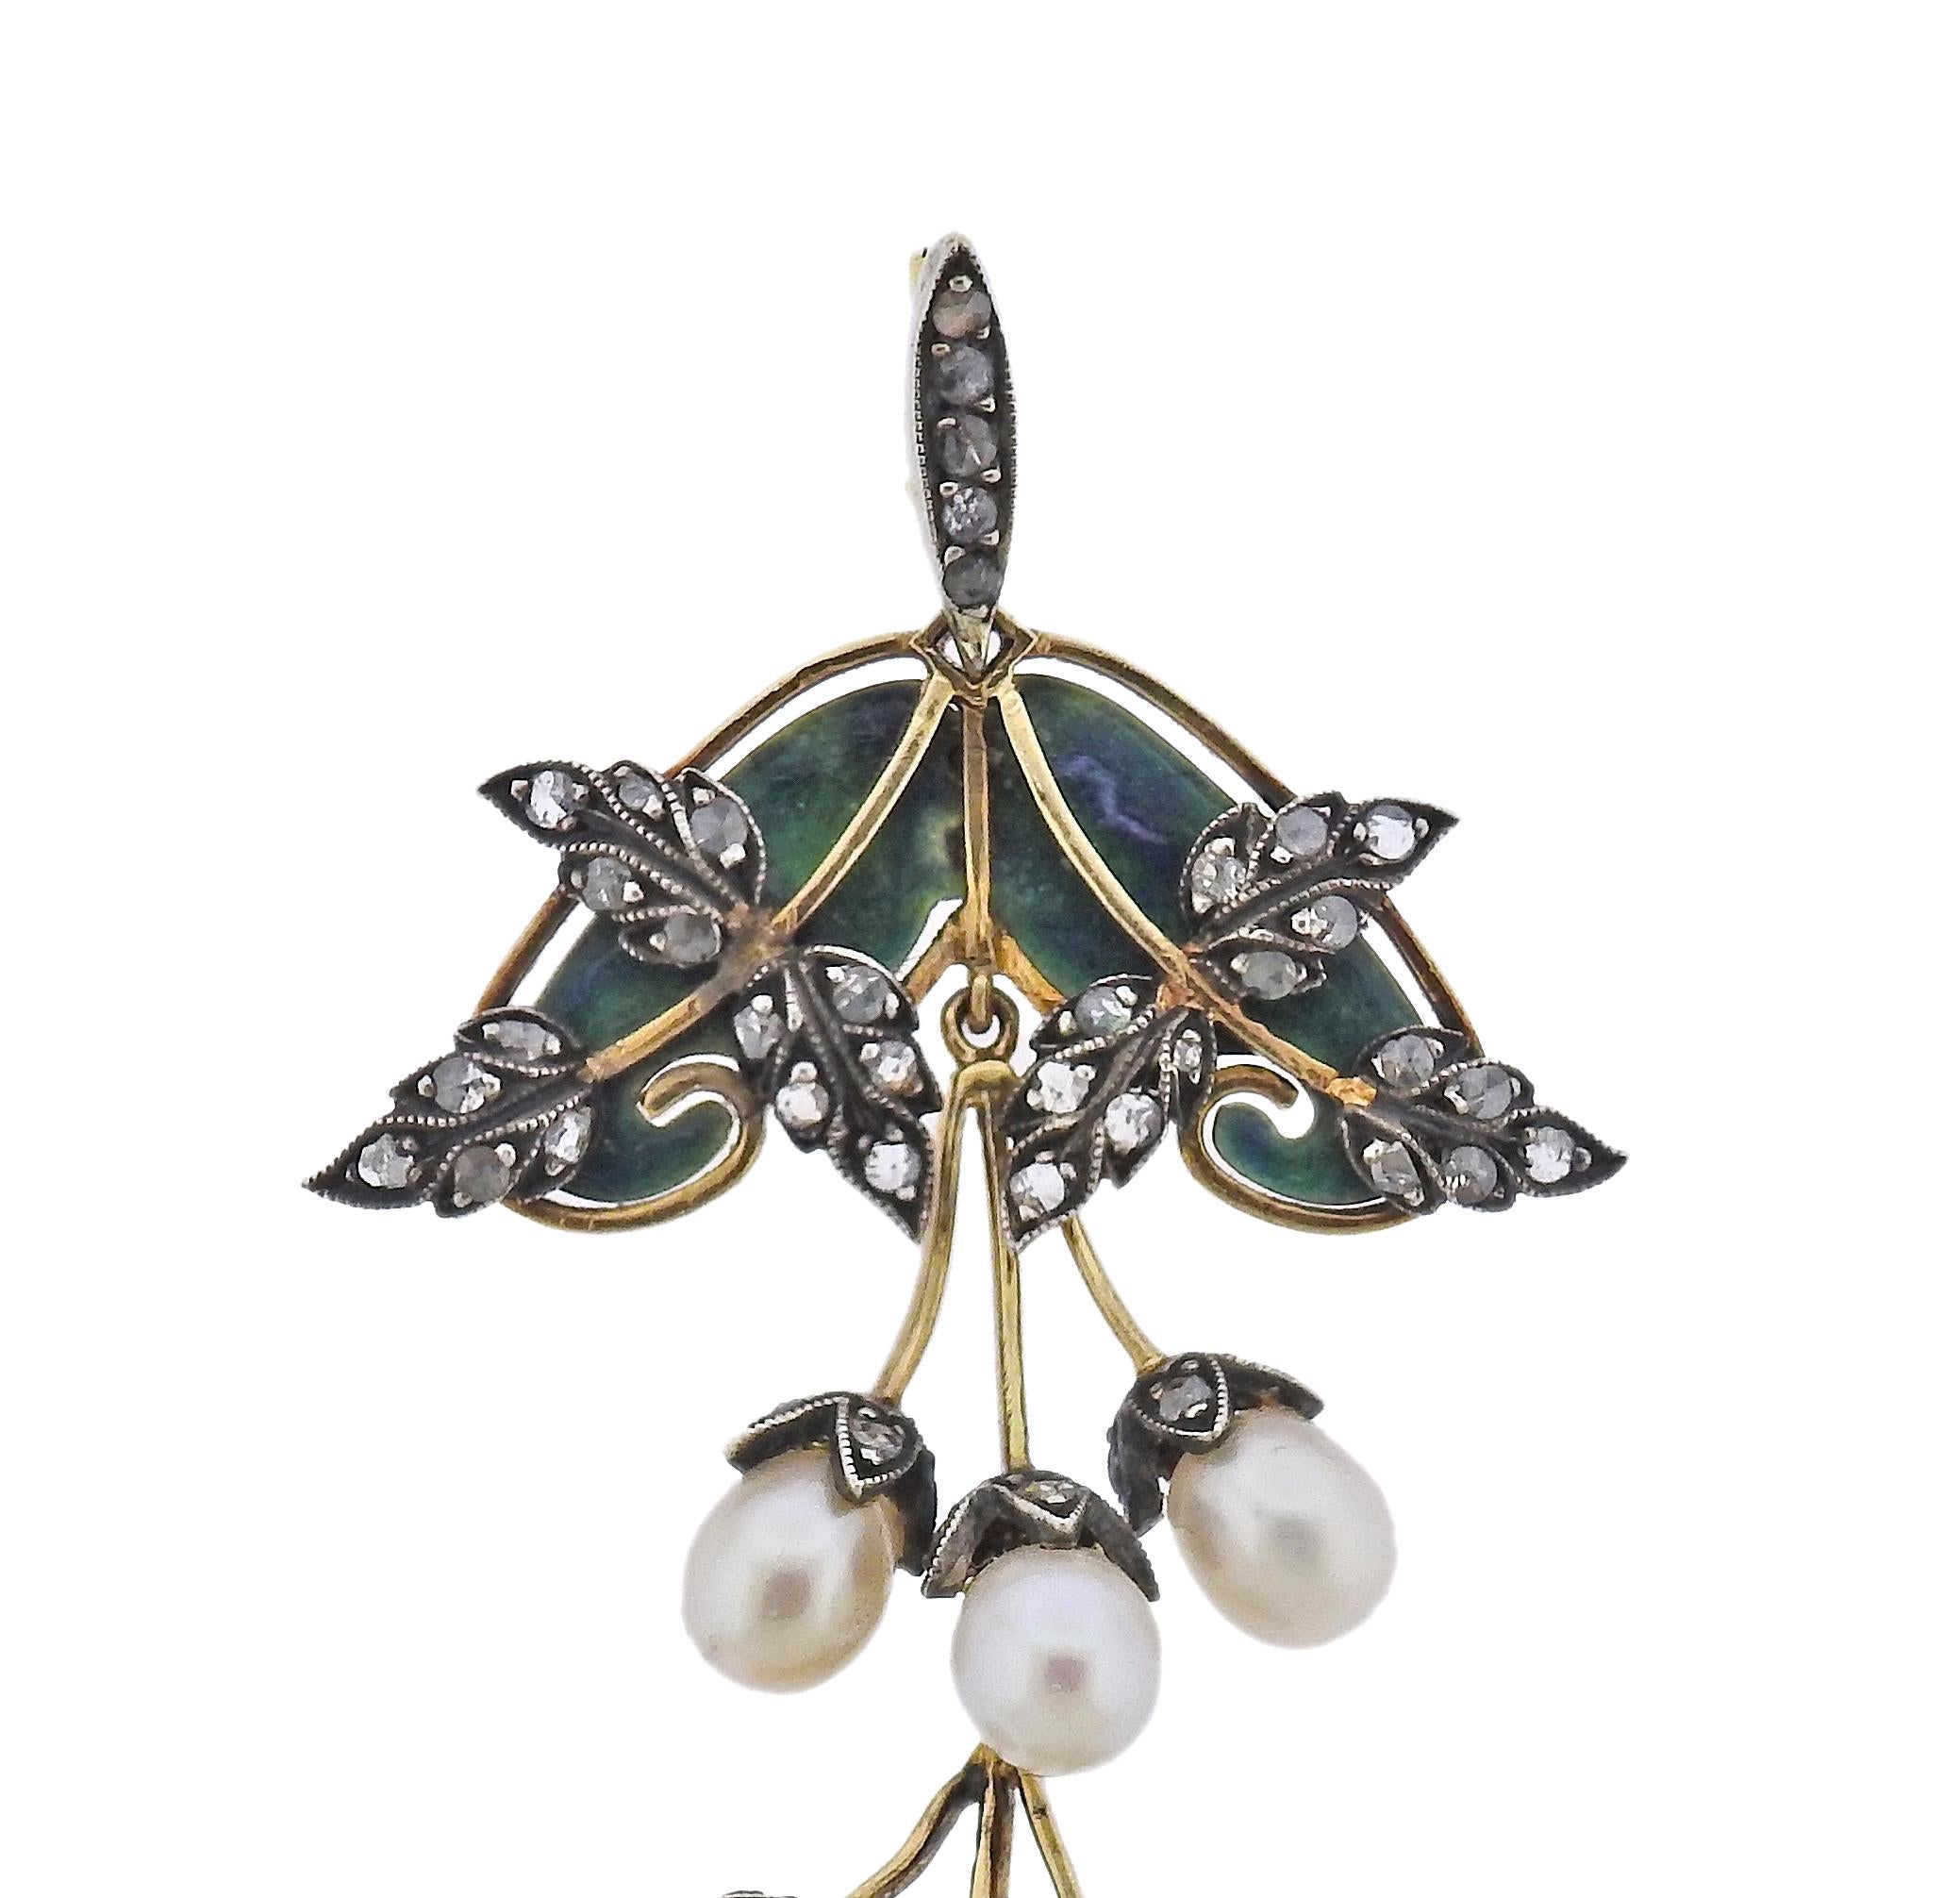 Antique Art Nouveau 18k gold and silver drop pendant, adorned with plique-a-jour enamel, 5.8 - 6.5mm pearls and rose cut diamonds. Pendant is 2 7/8